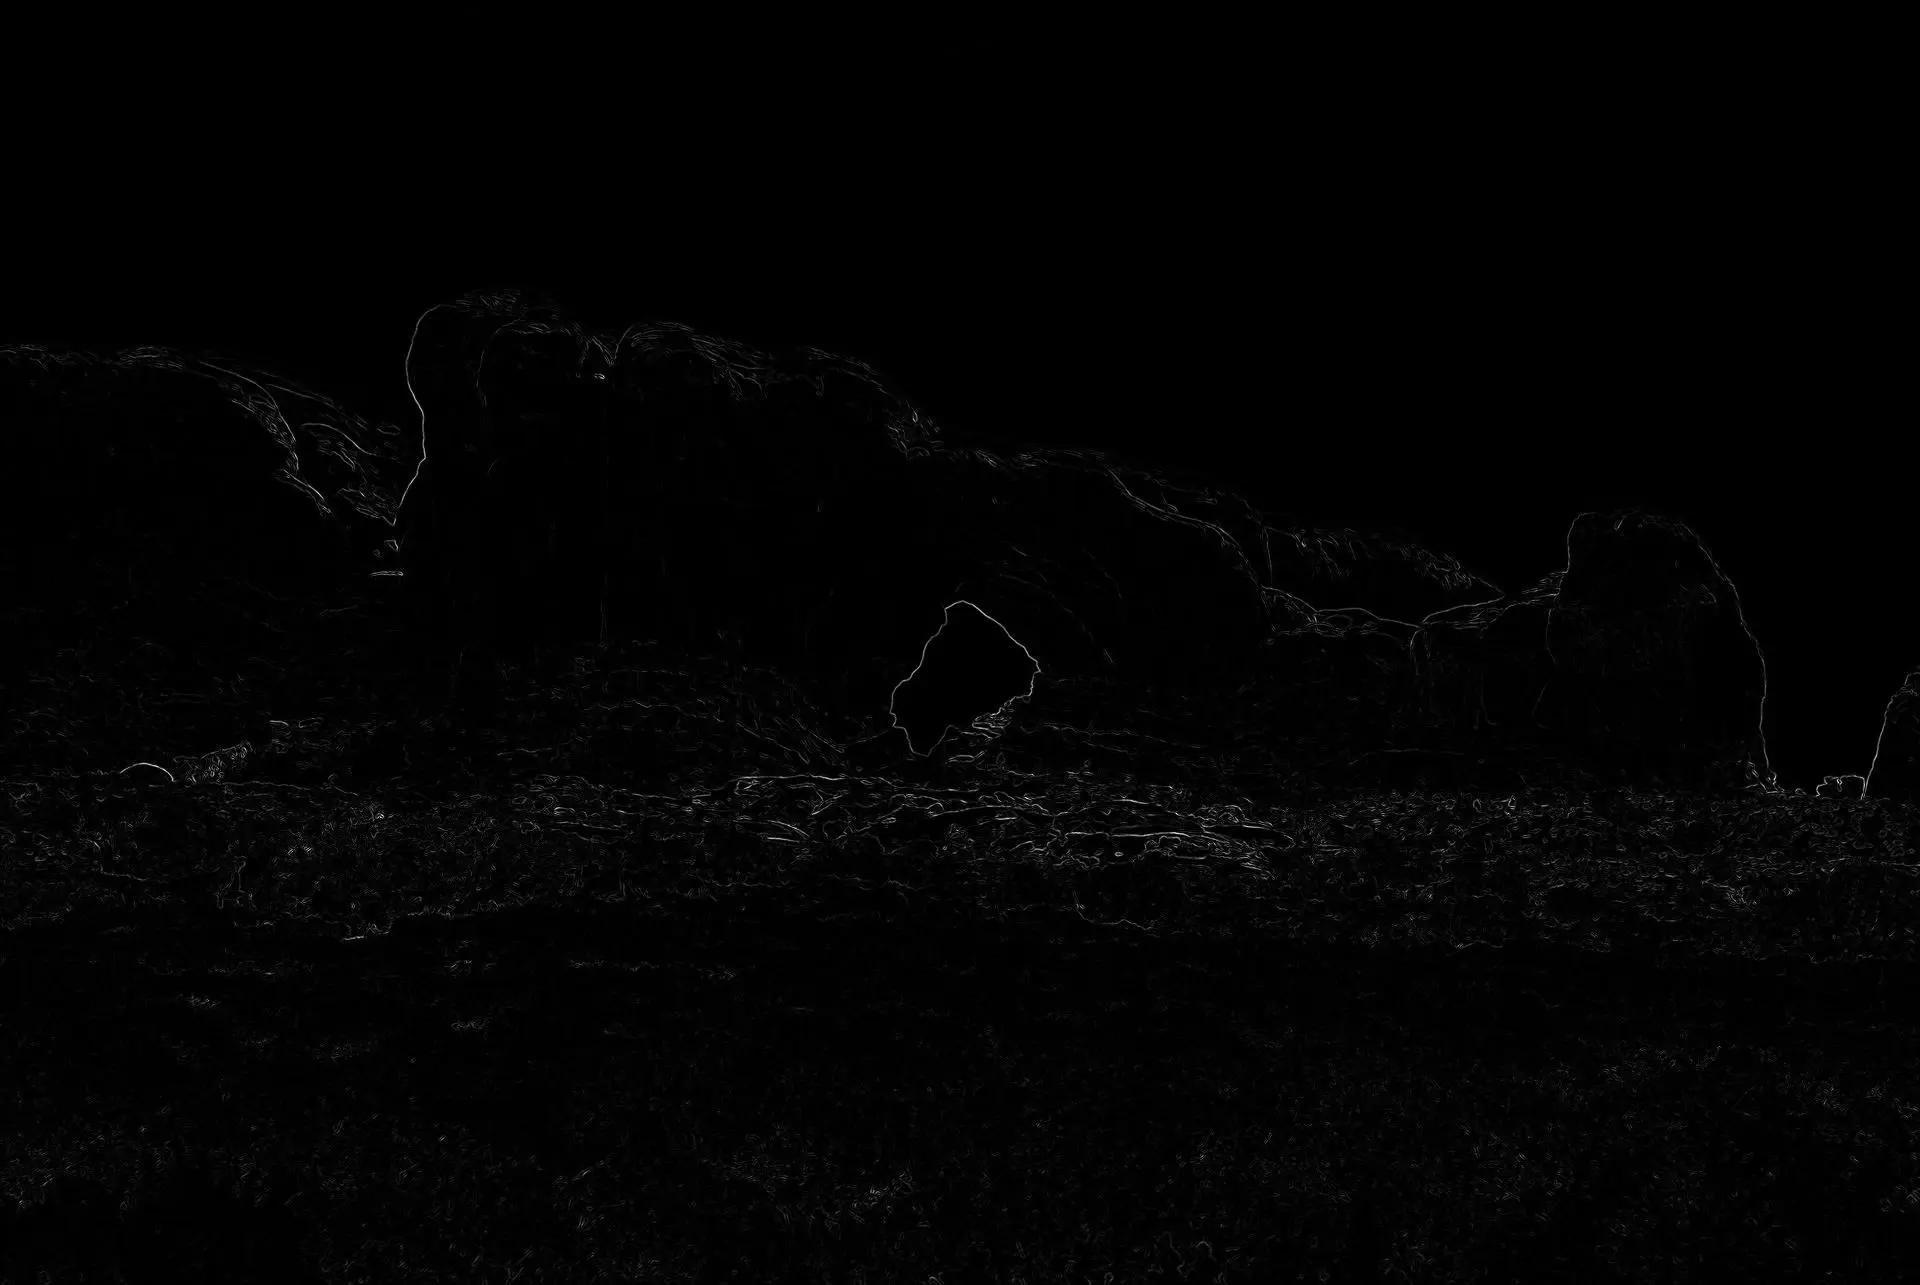 拱门图片中每个像素的能量，用白色显示高能量像素、黑色显示低能量像素来可视化。注意岩层孔洞边缘旁的高能量。